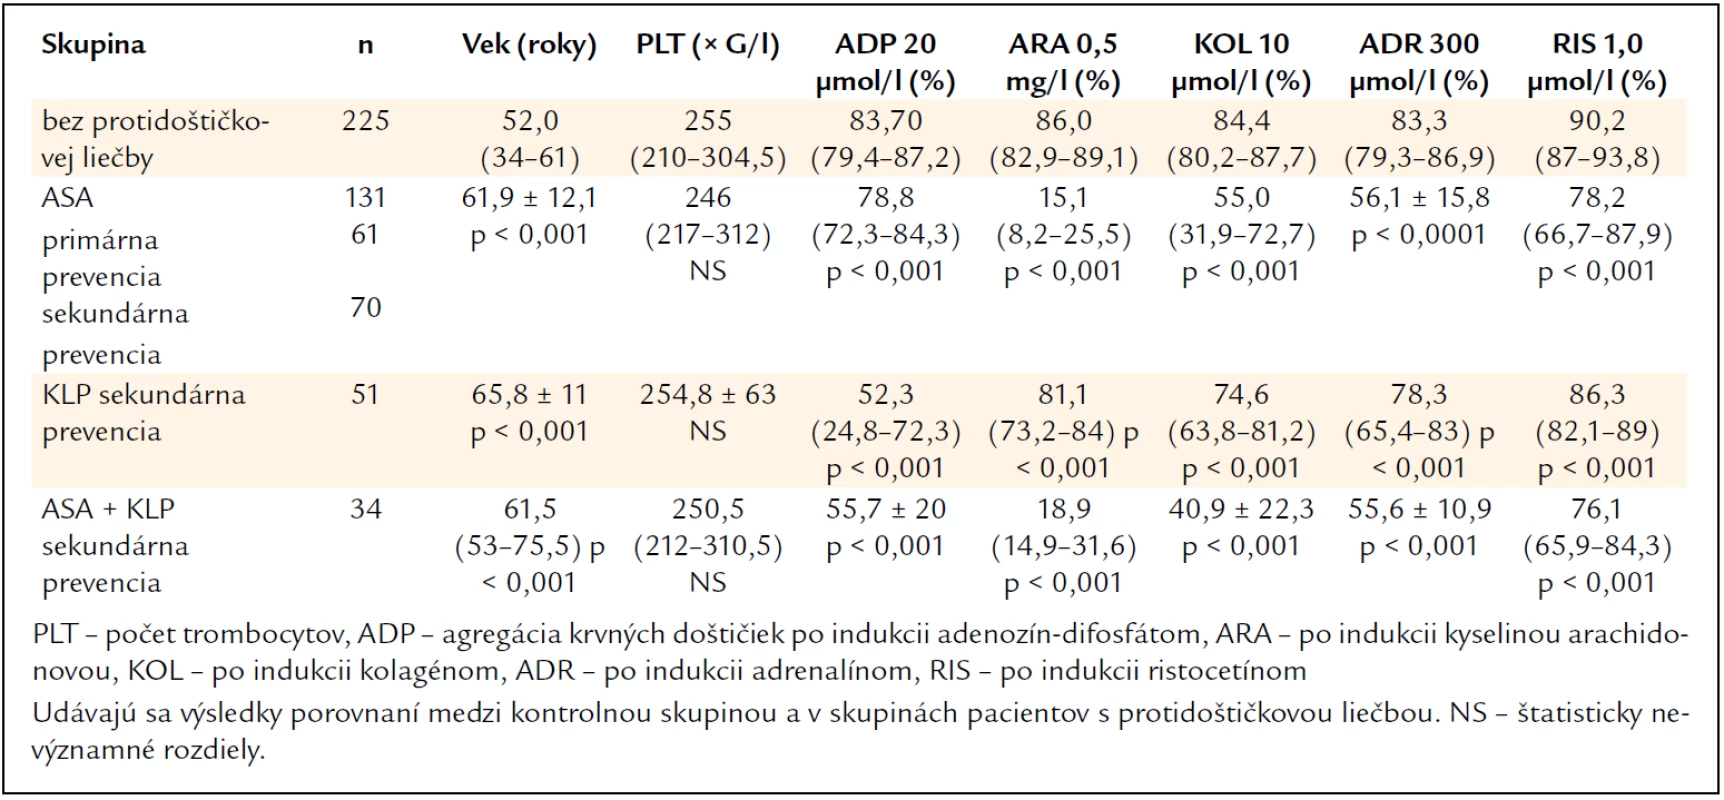 Výsledky v kontrolnej skupine jedincov bez protidoštičkovej liečby a v súbore pacientov s protidoštičkovou liečbou – kyselinou acetylsalicylovou (ASA), klopidogrelom (KLP) a s kombinovanou liečbou (ASA + KLP).